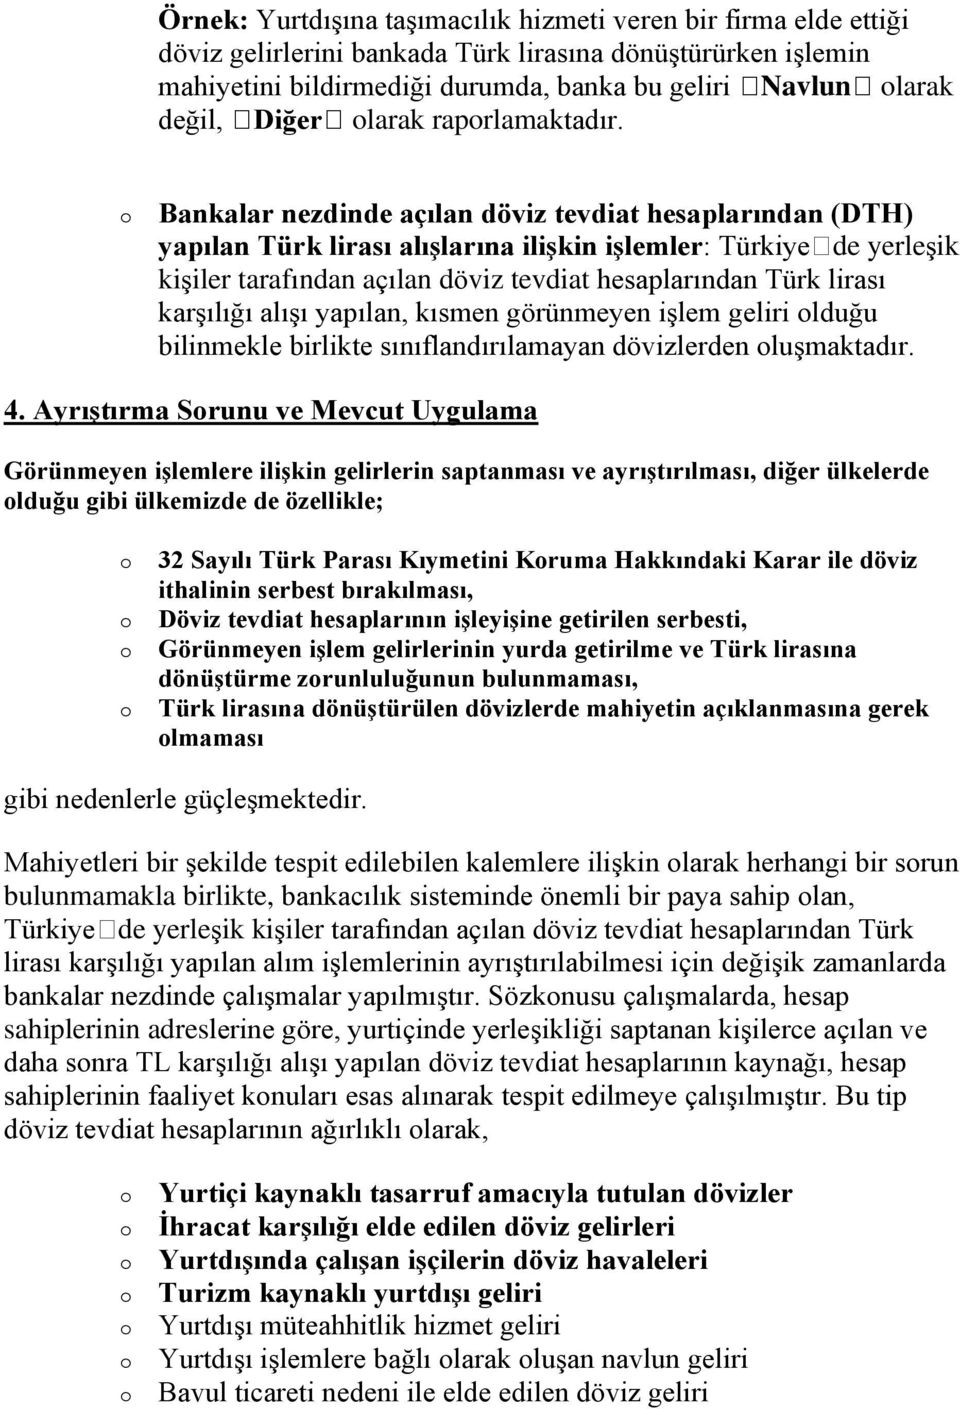 Bankalar nezdinde açılan döviz tevdiat hesaplarından (DTH) yapılan Türk lirası alışlarına ilişkin işlemler: Türkiyede yerleşik kişiler tarafından açılan döviz tevdiat hesaplarından Türk lirası